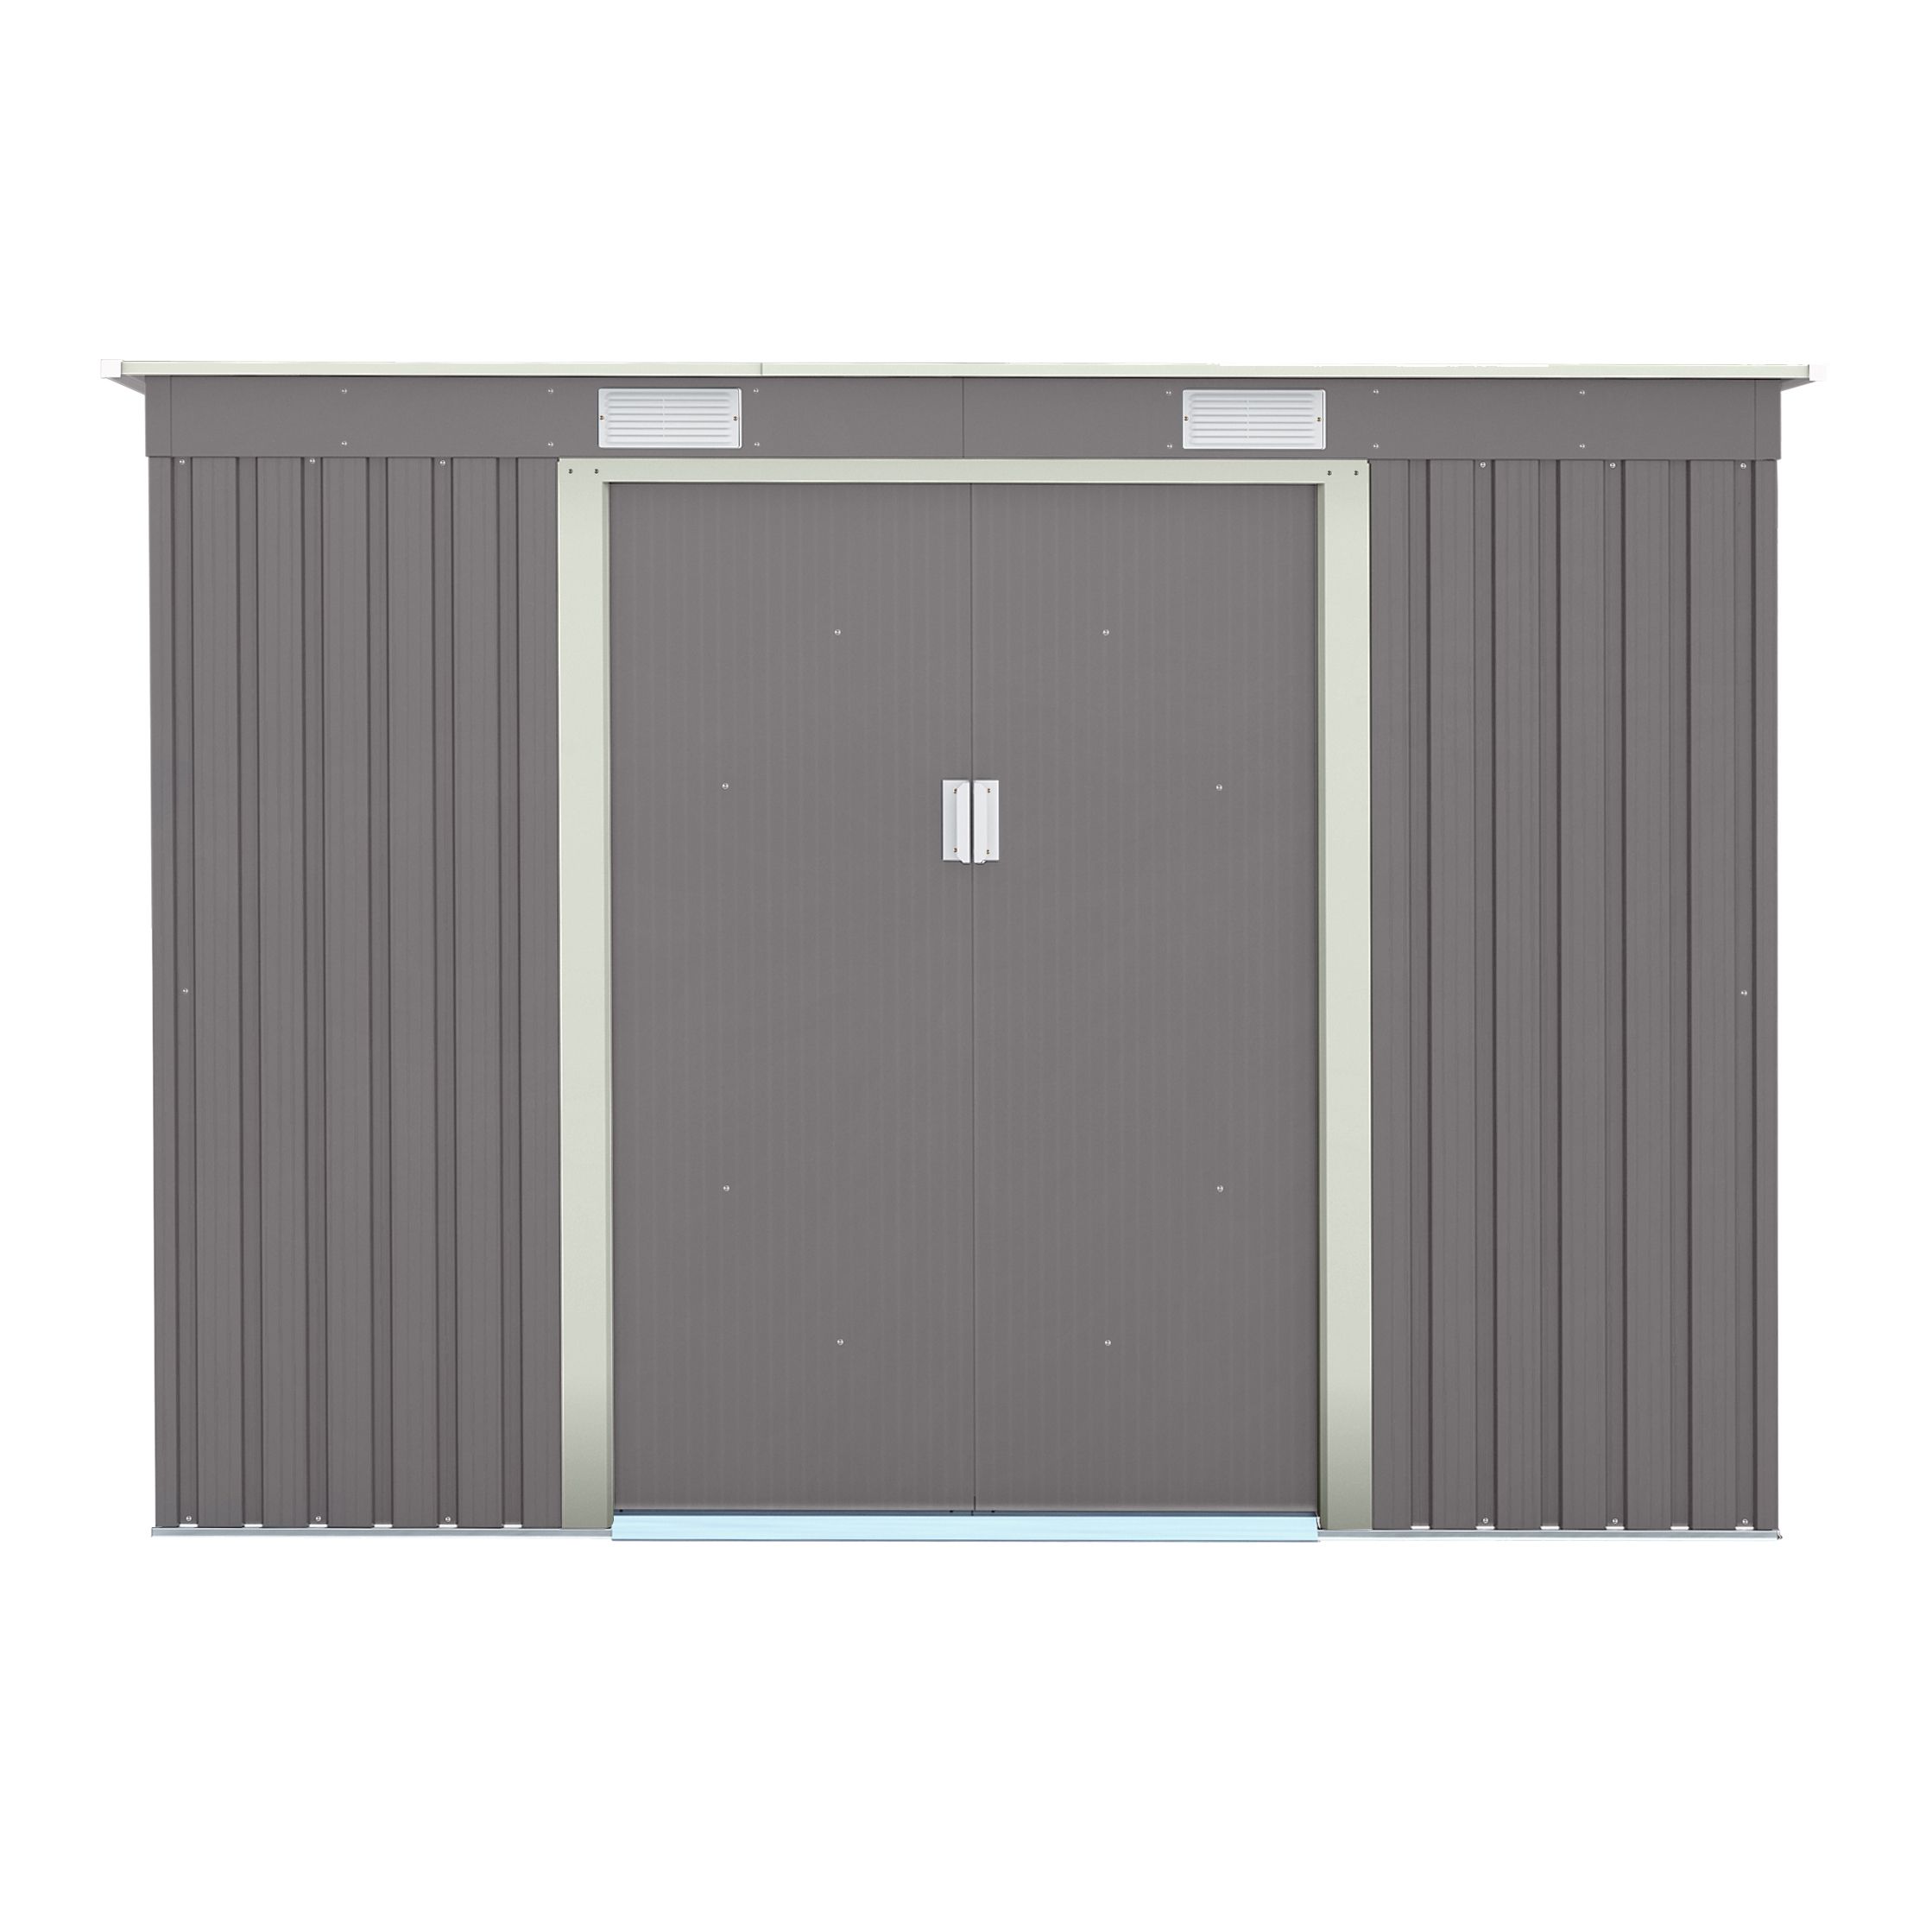 Rowlinson Trentvale 8x4 ft Pent Light grey Metal 2 door Shed